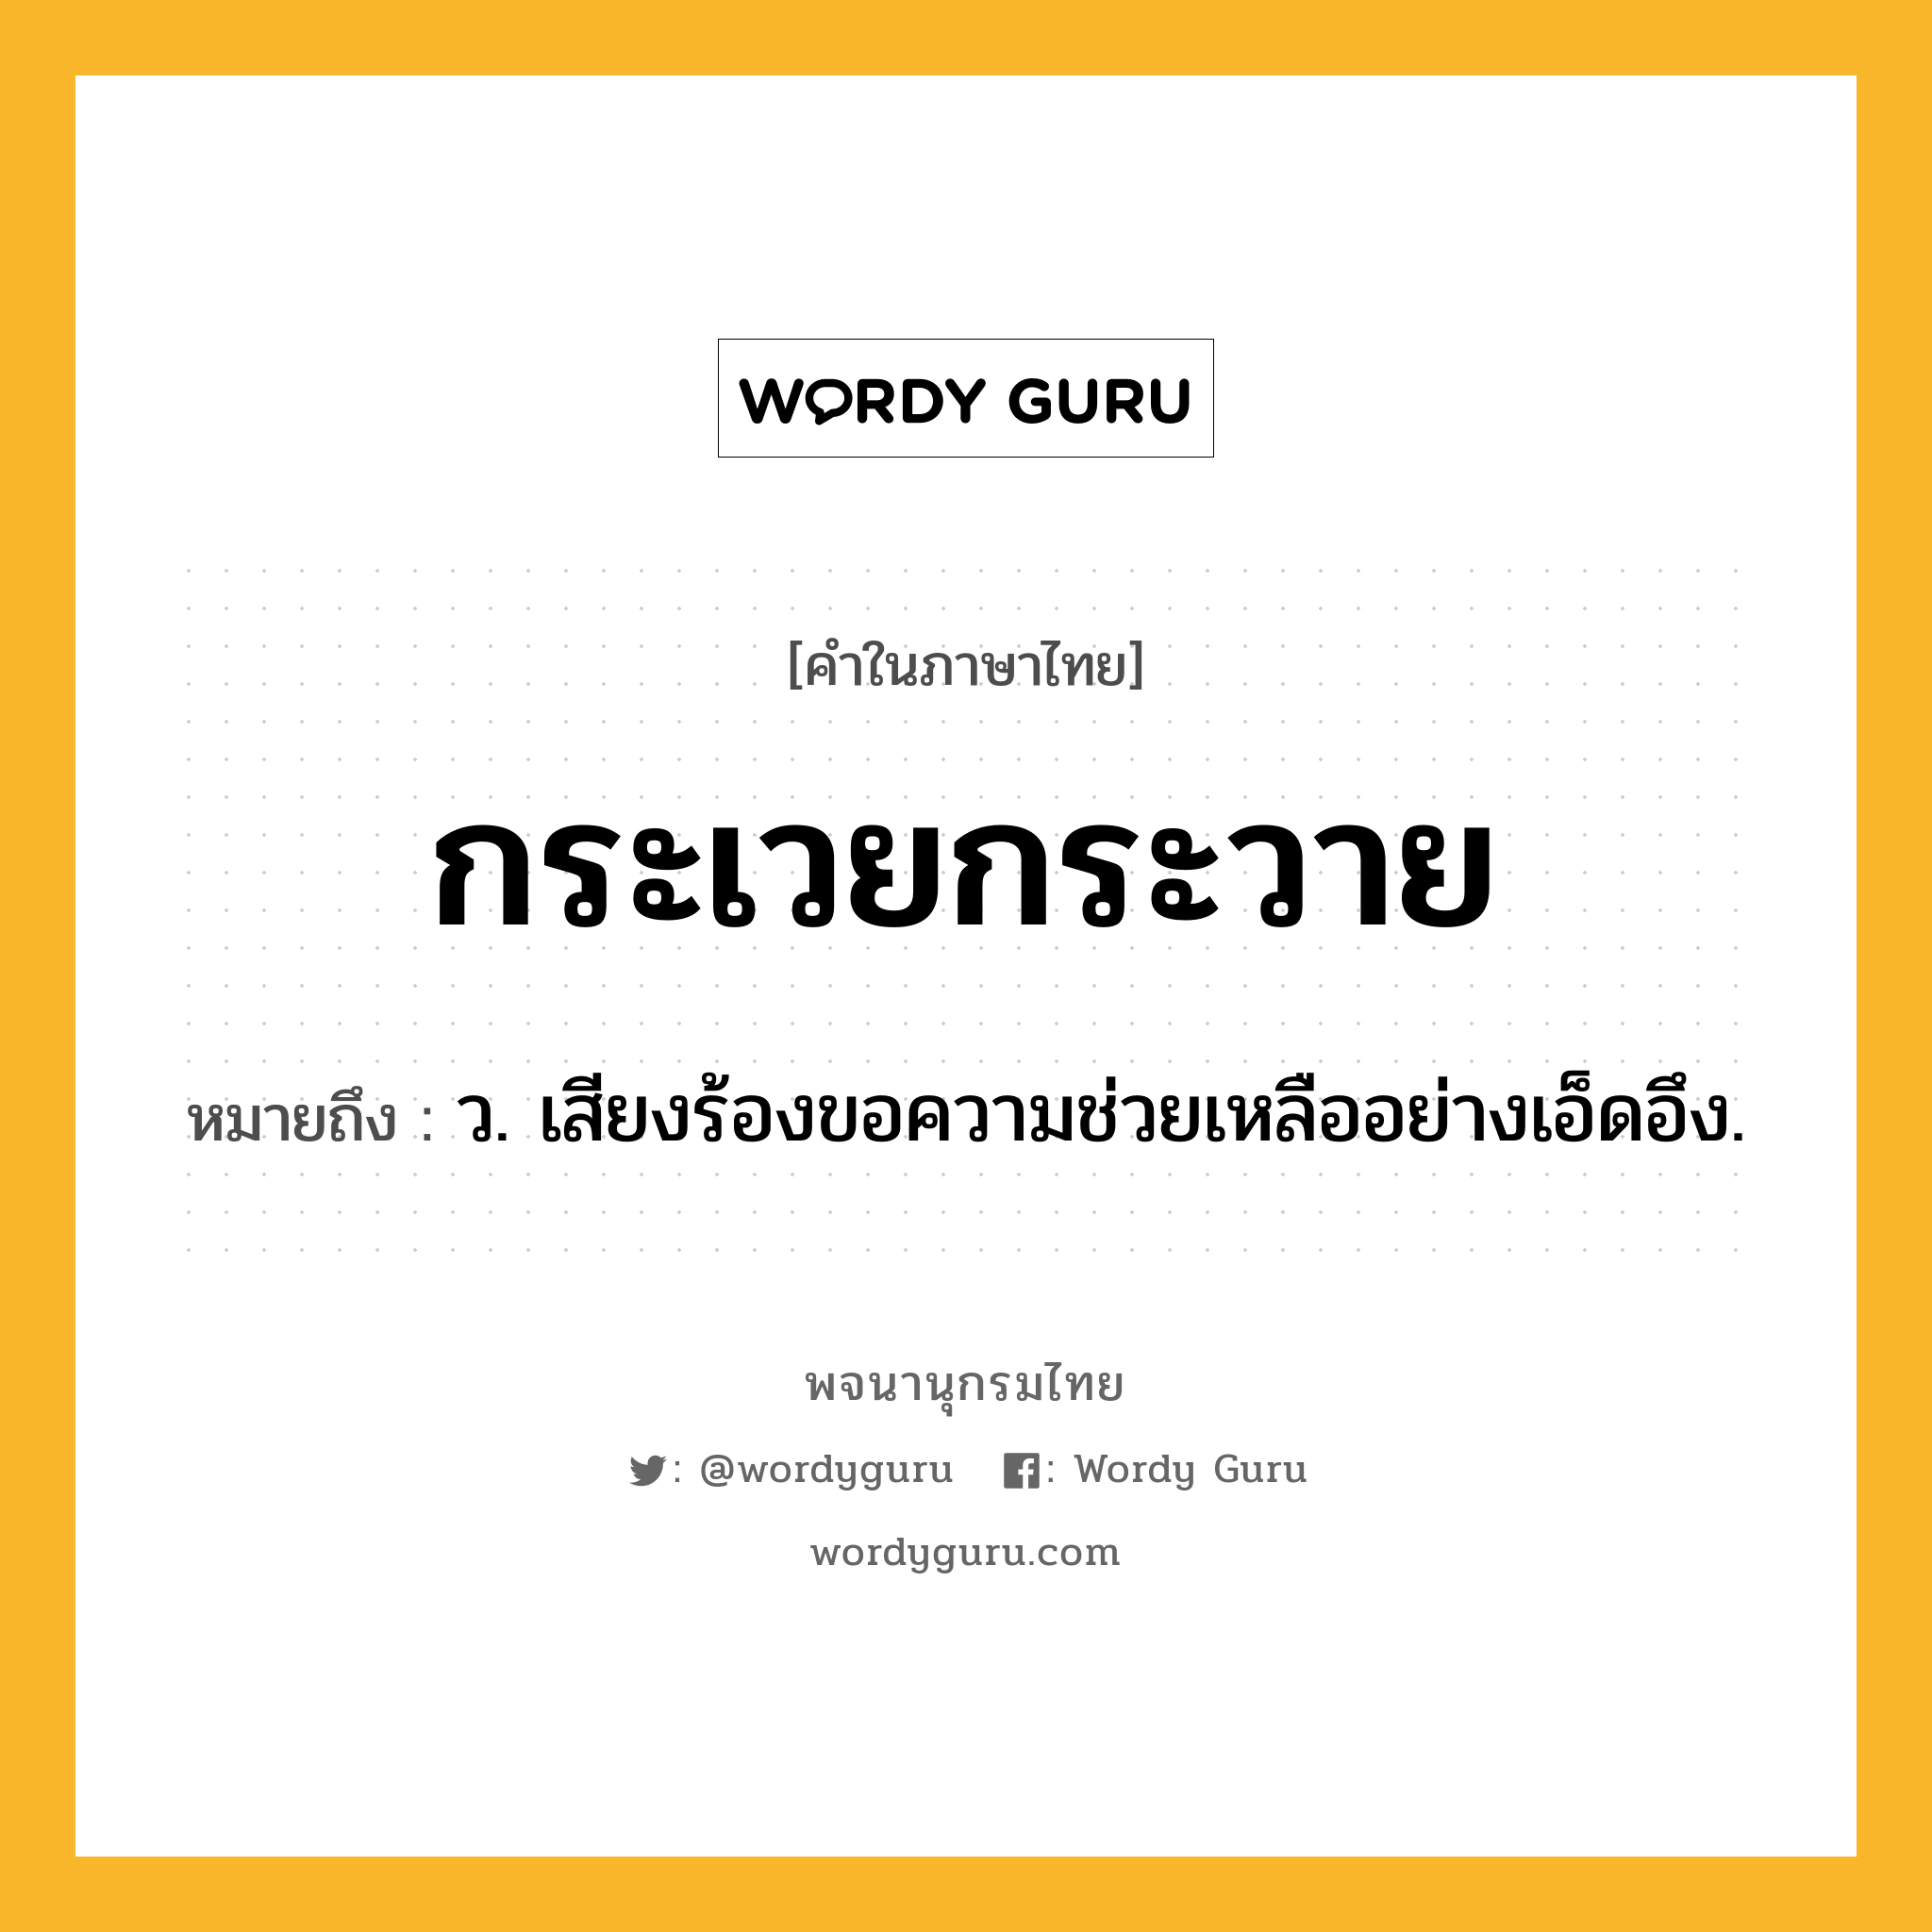 กระเวยกระวาย ความหมาย หมายถึงอะไร?, คำในภาษาไทย กระเวยกระวาย หมายถึง ว. เสียงร้องขอความช่วยเหลืออย่างเอ็ดอึง.